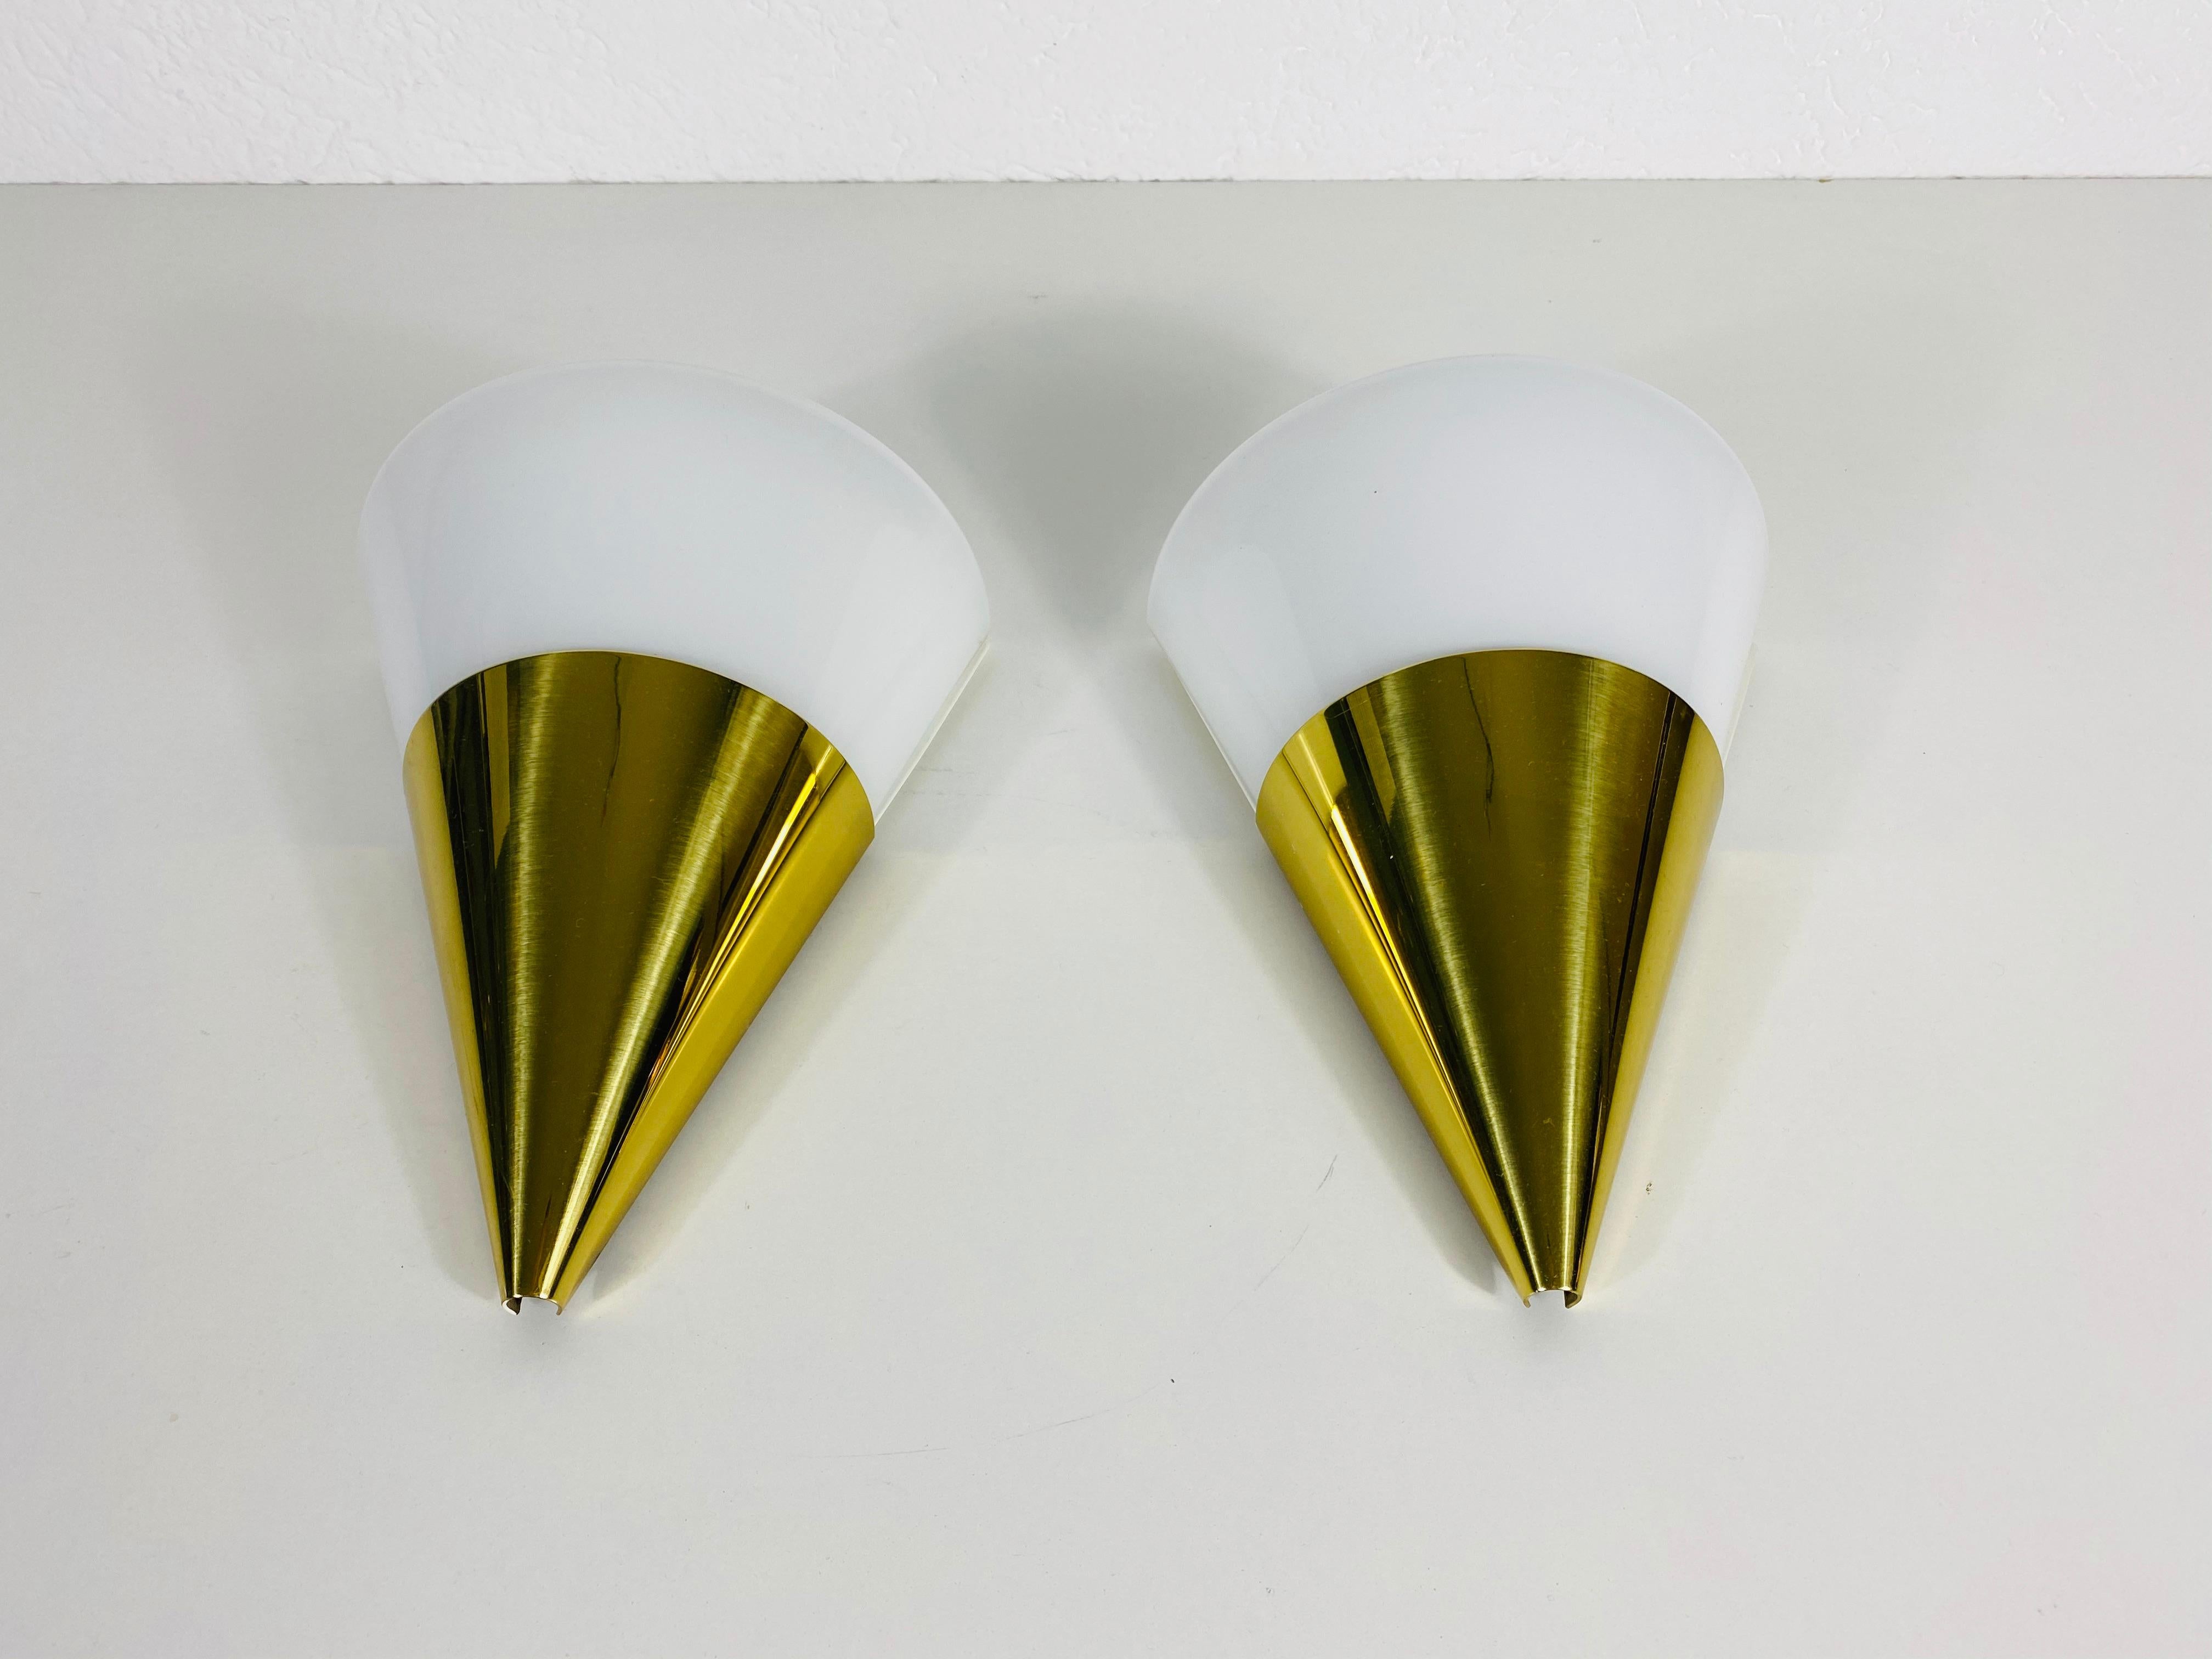 Ein schönes Paar moderner Wandlampen von Glashütte Limburg, hergestellt in Deutschland in den 1980er Jahren. Sie haben eine konische Form und sind aus Messing und Opalglas gefertigt. Die Rückseite ist aus Metall gefertigt.

Die Leuchten benötigen